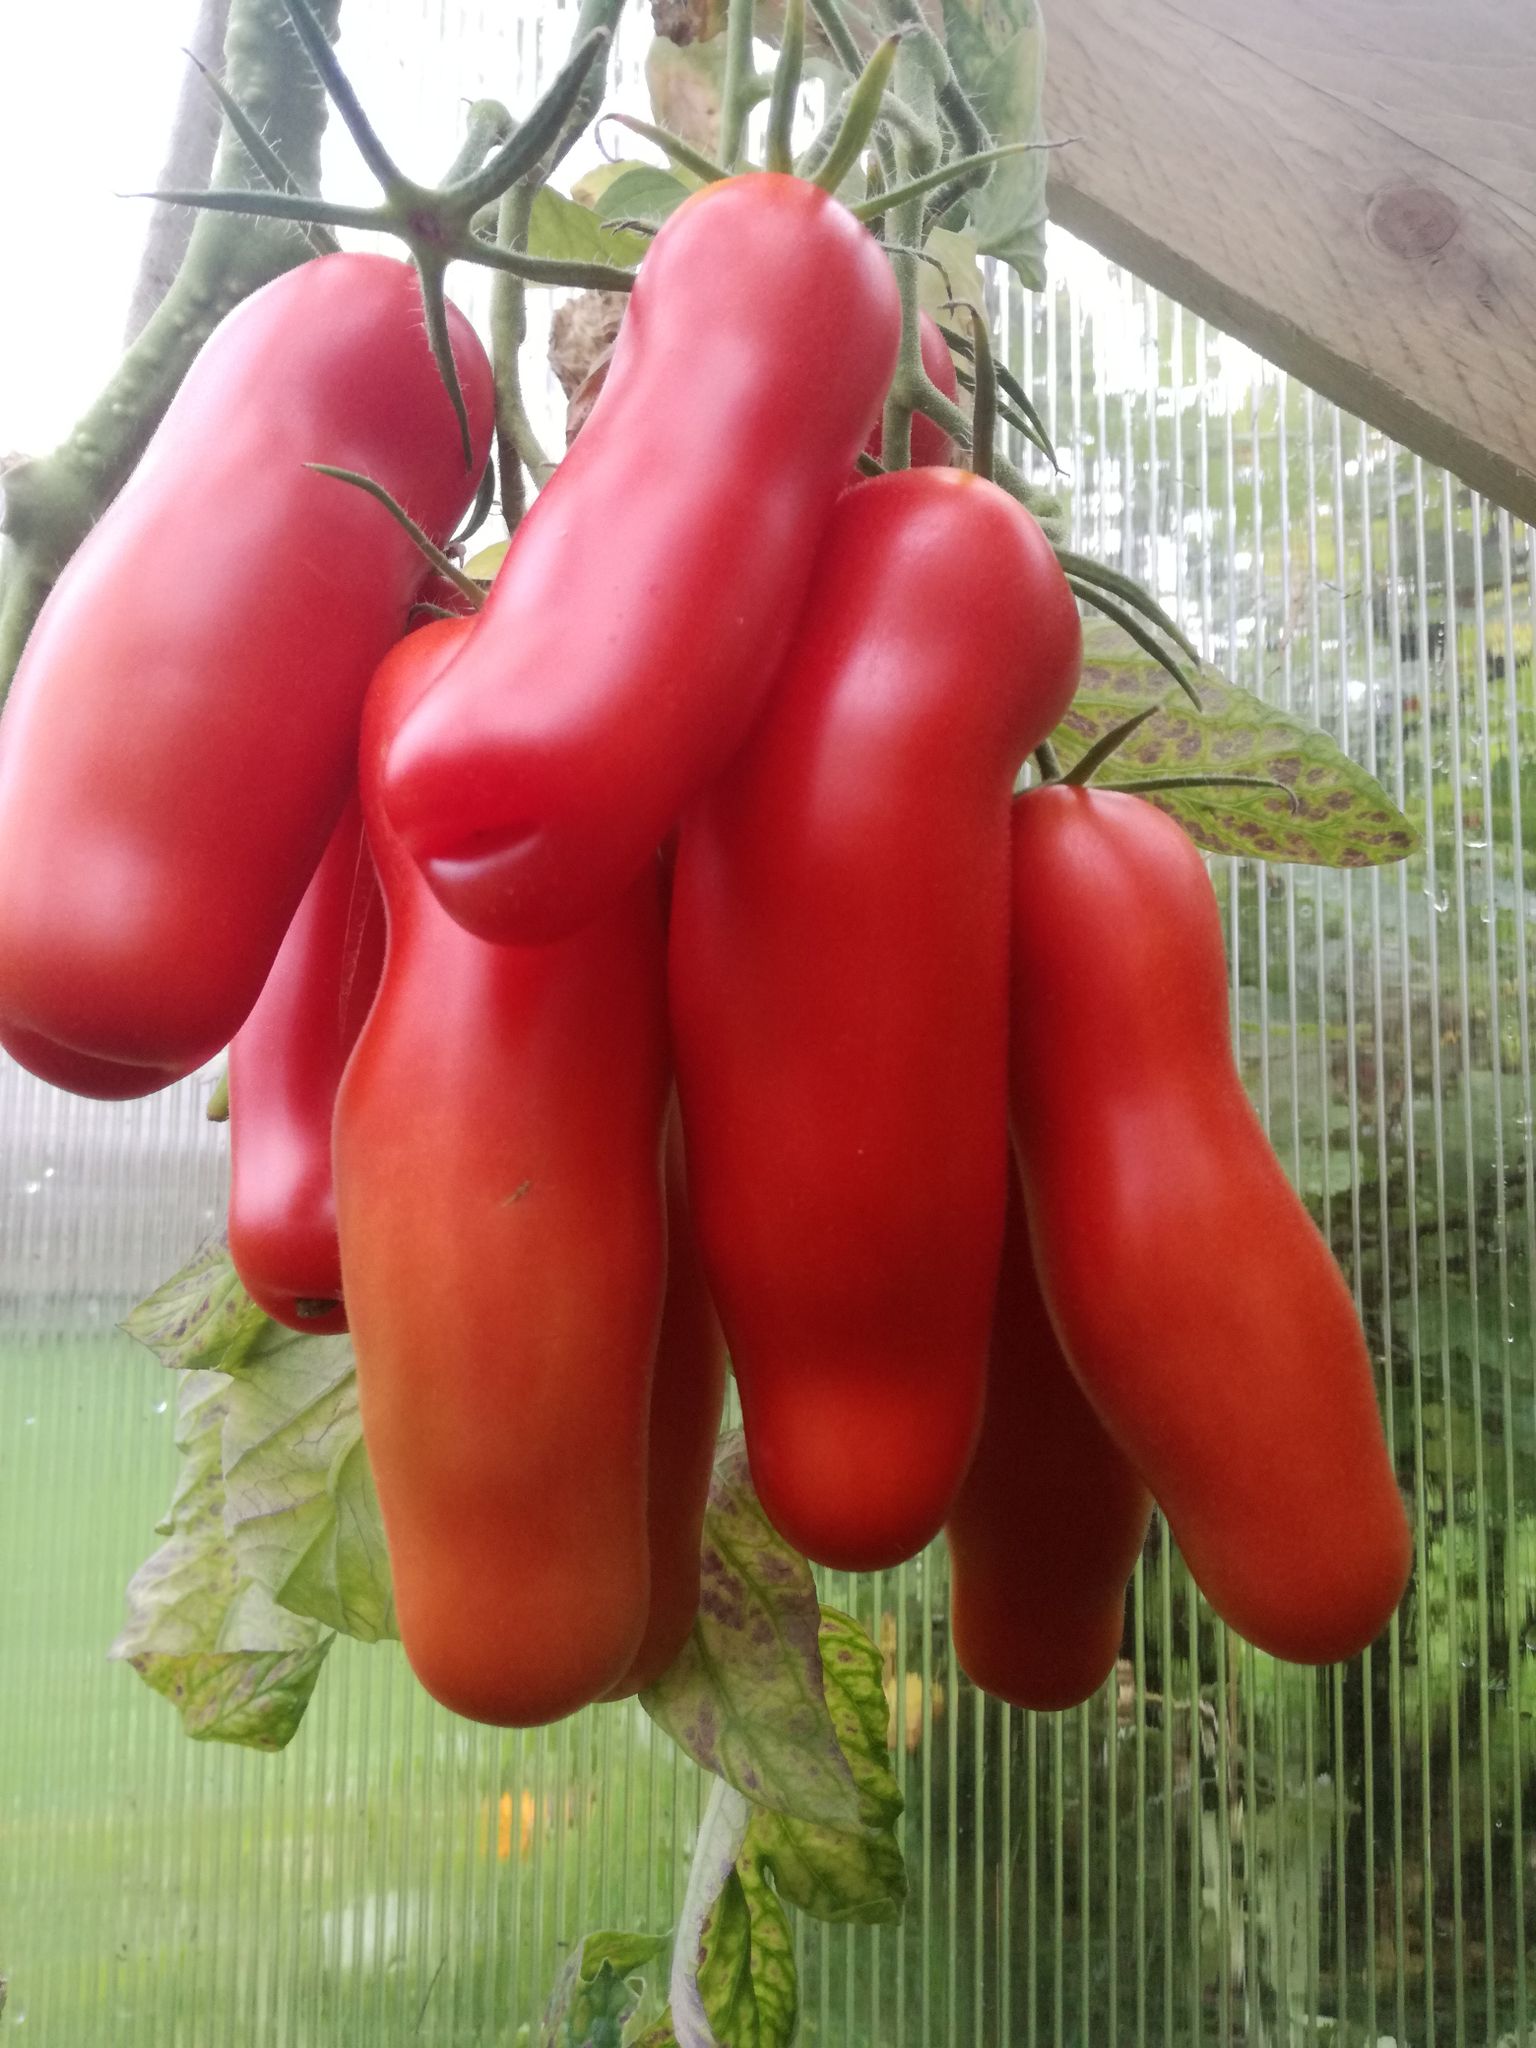 Vallatud tomatid.